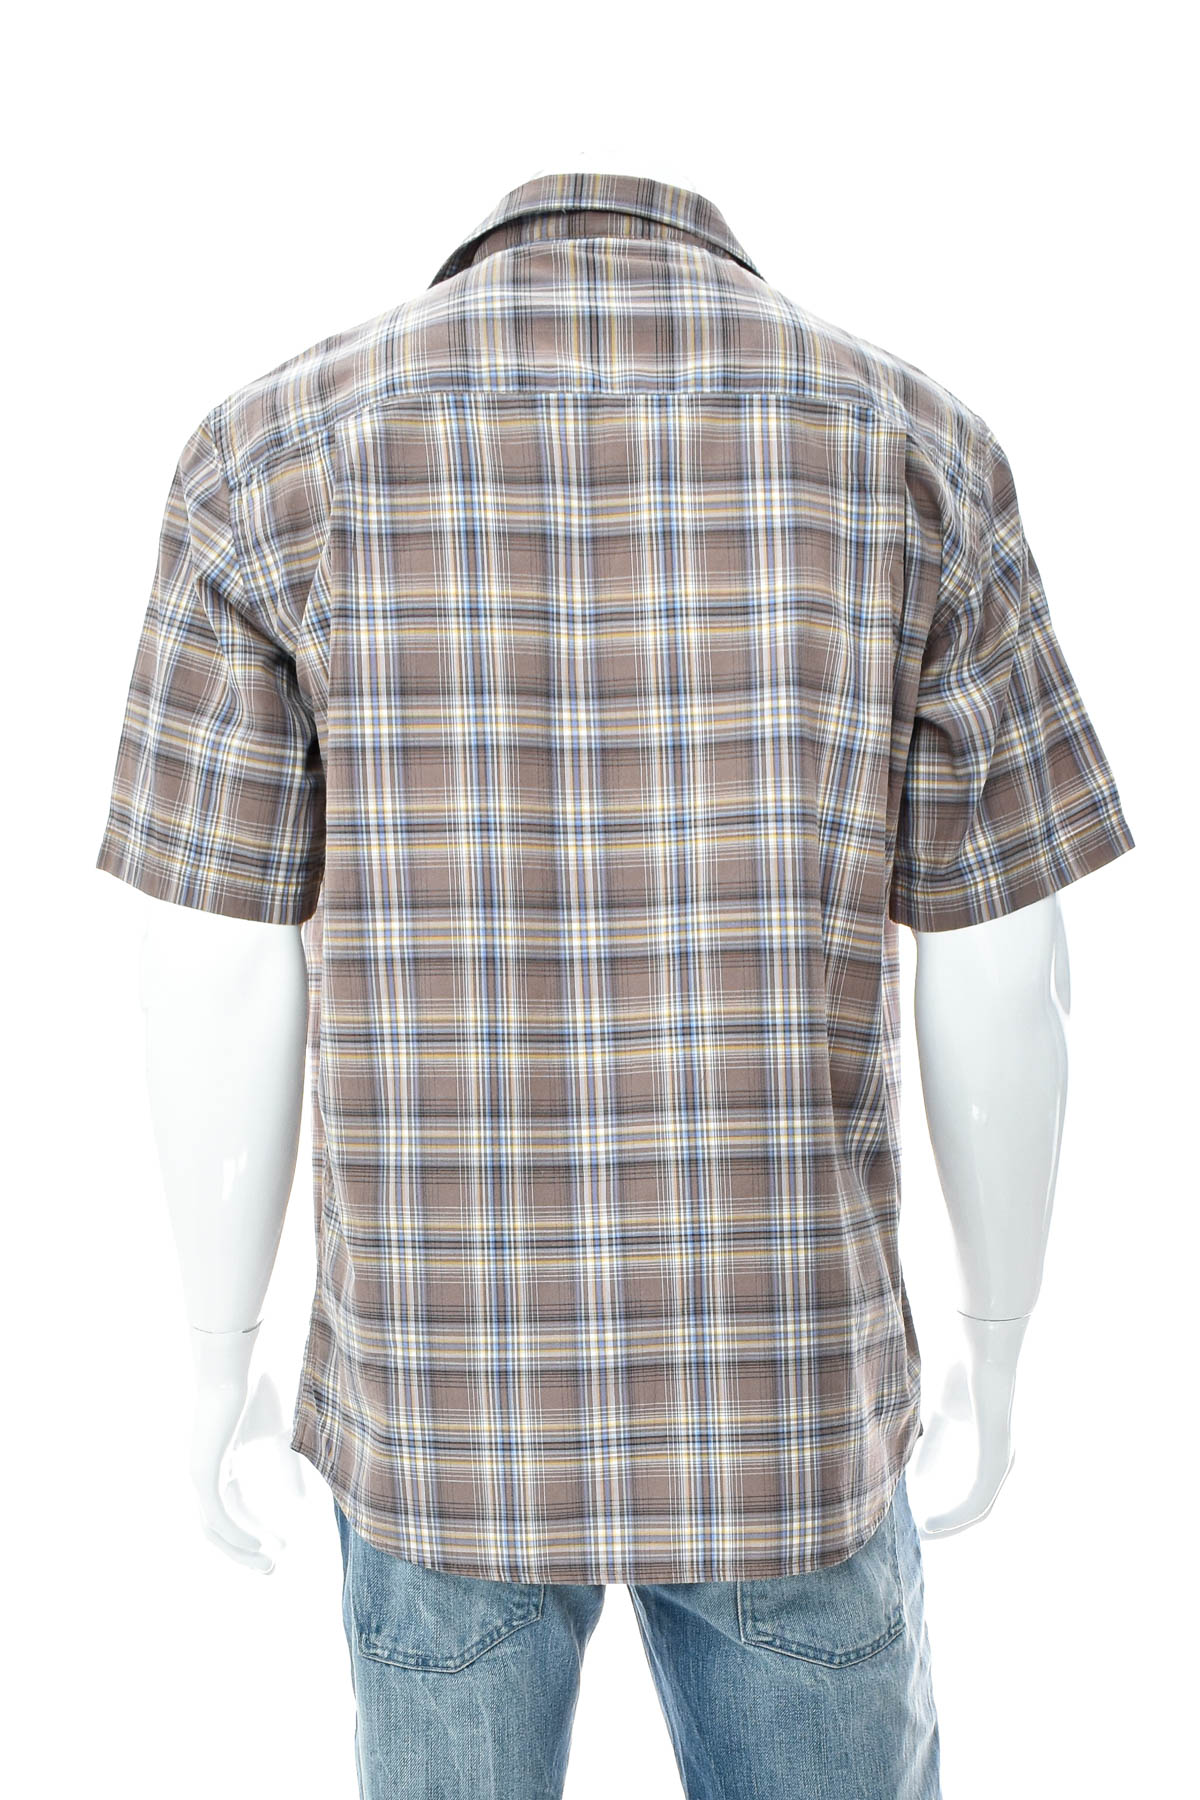 Men's shirt - Biaggini - 1